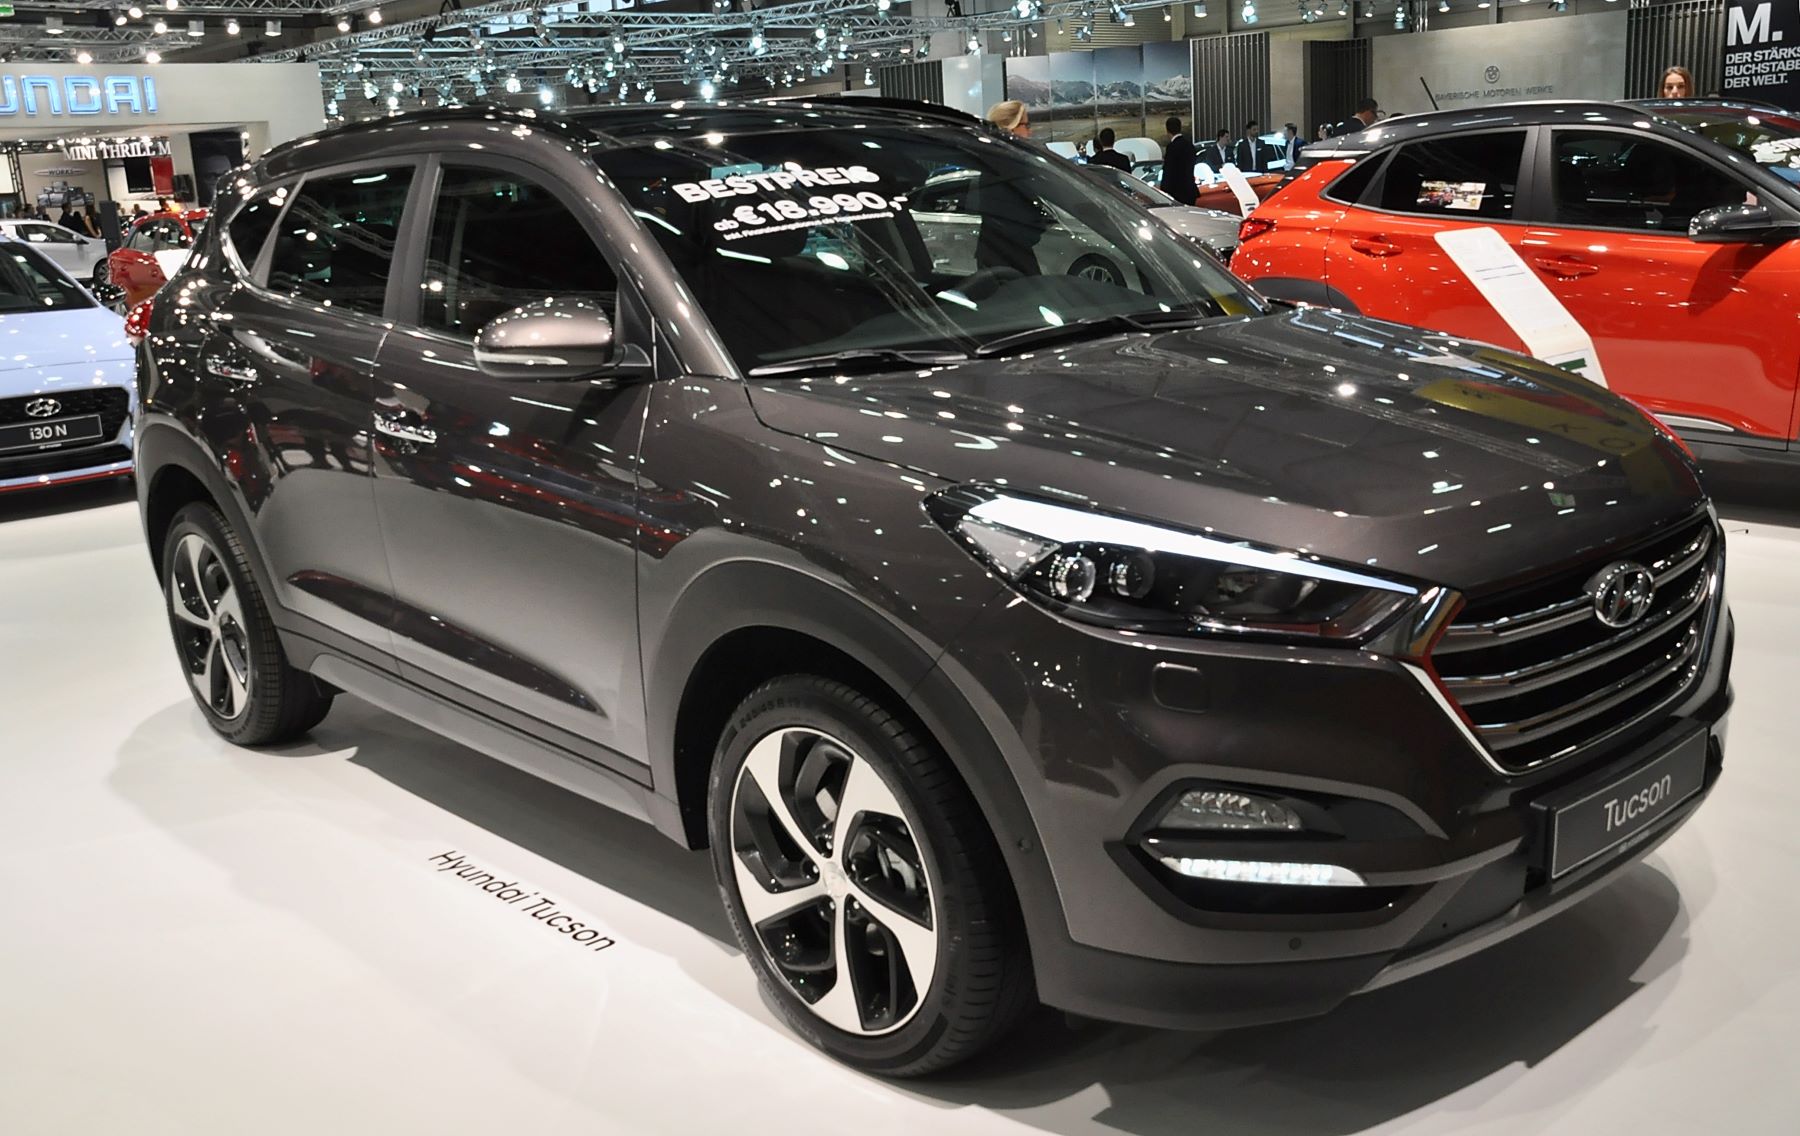 The 2018 Hyundai Tucson at the Vienna Holiday Fair in Vienna, Austria